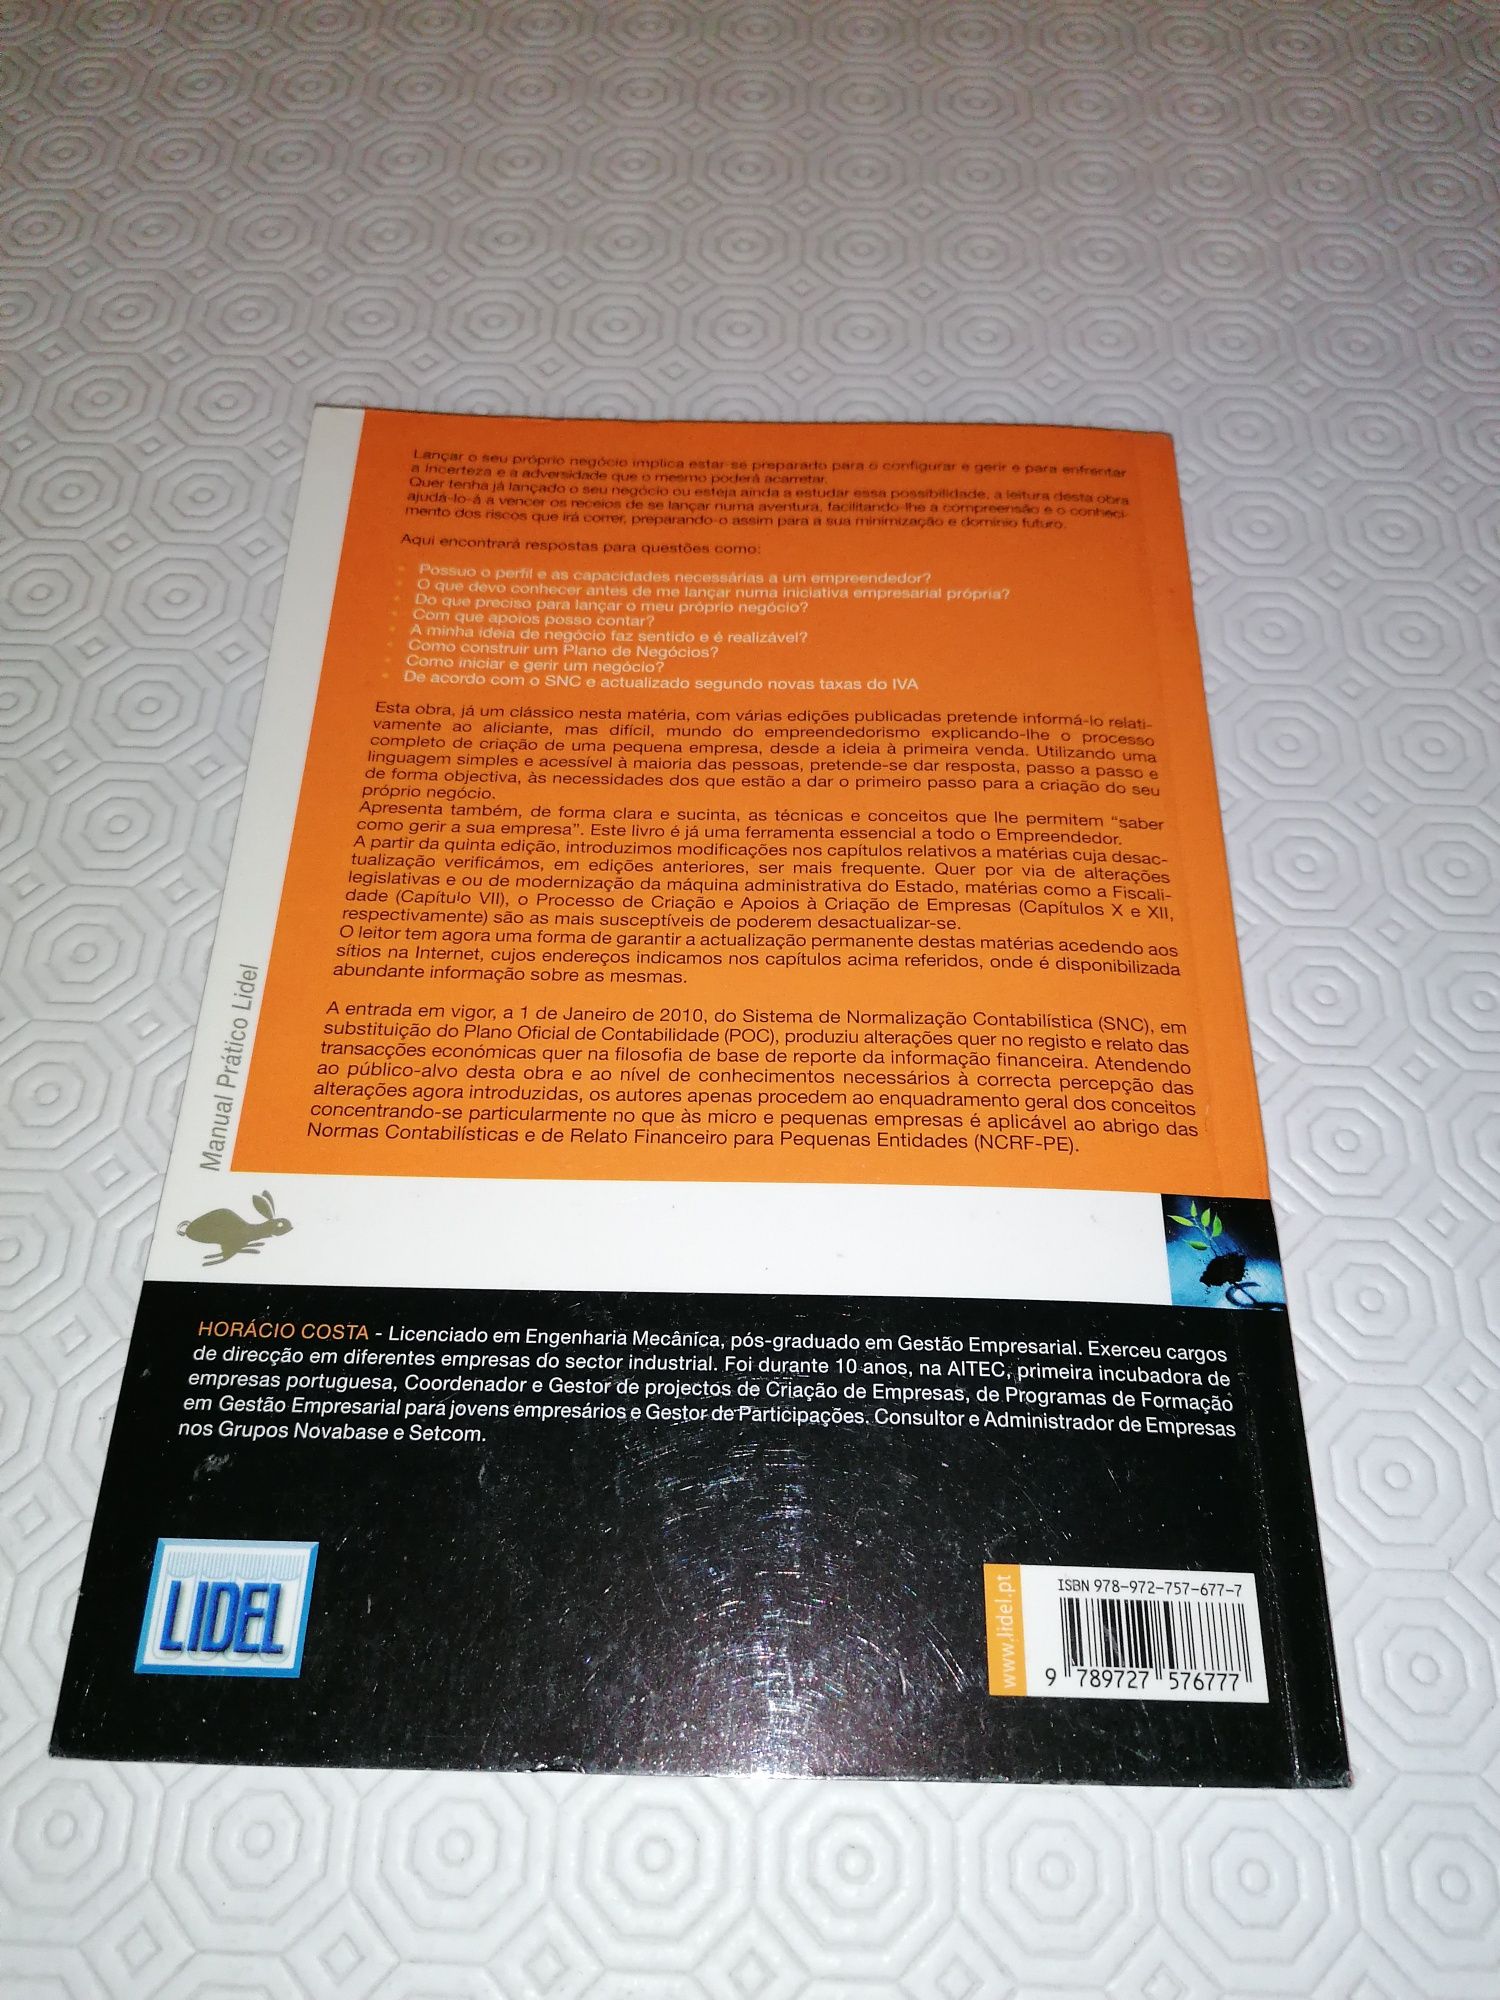 Criação & Gestão de Micro-Empresas & Pequenos Negócios
(9ª Edição)